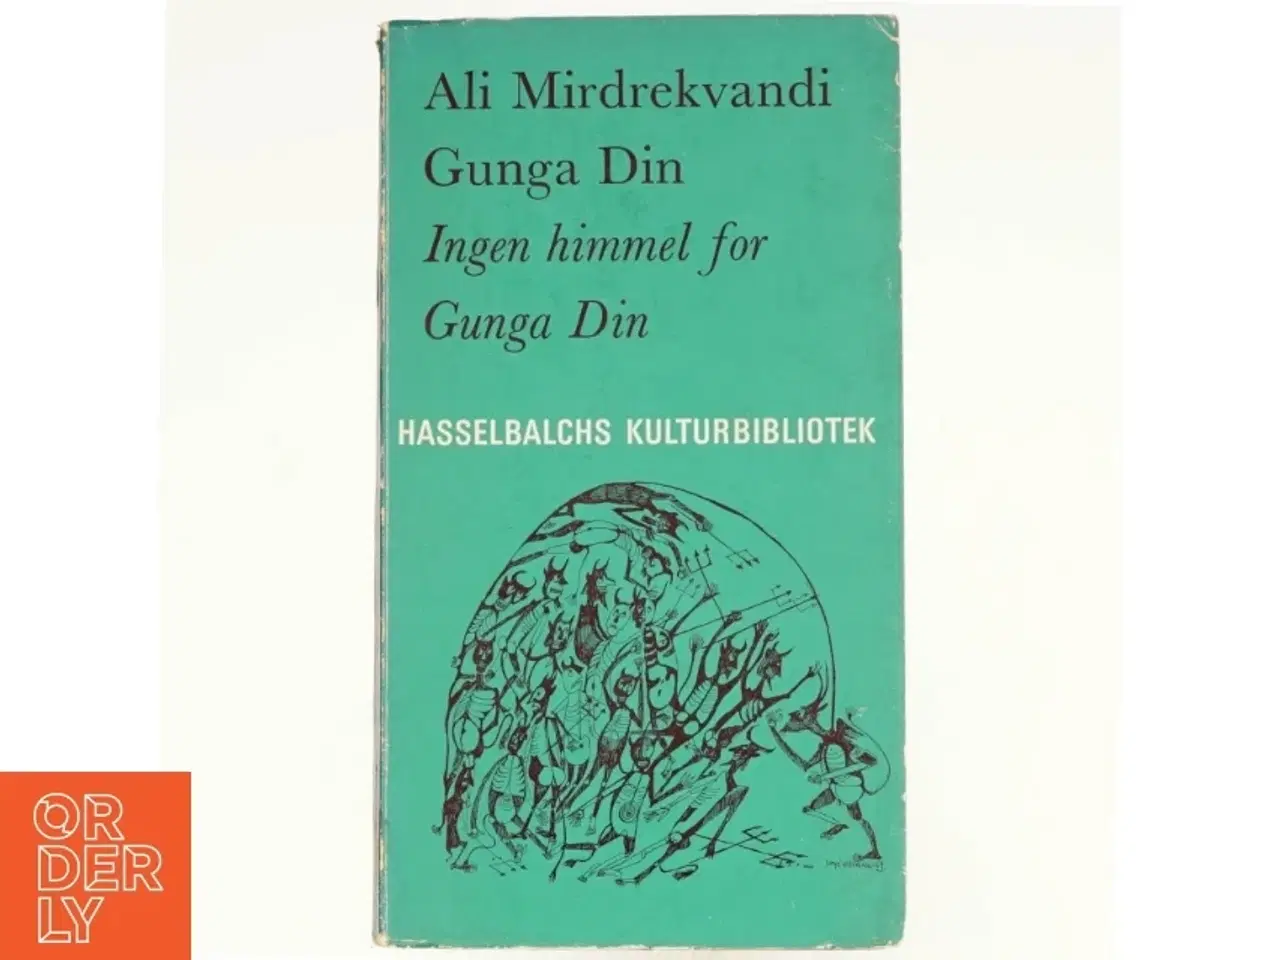 Billede 1 - Inge himmel for Gunga Din af Ali Mirdrekvandi (bog)